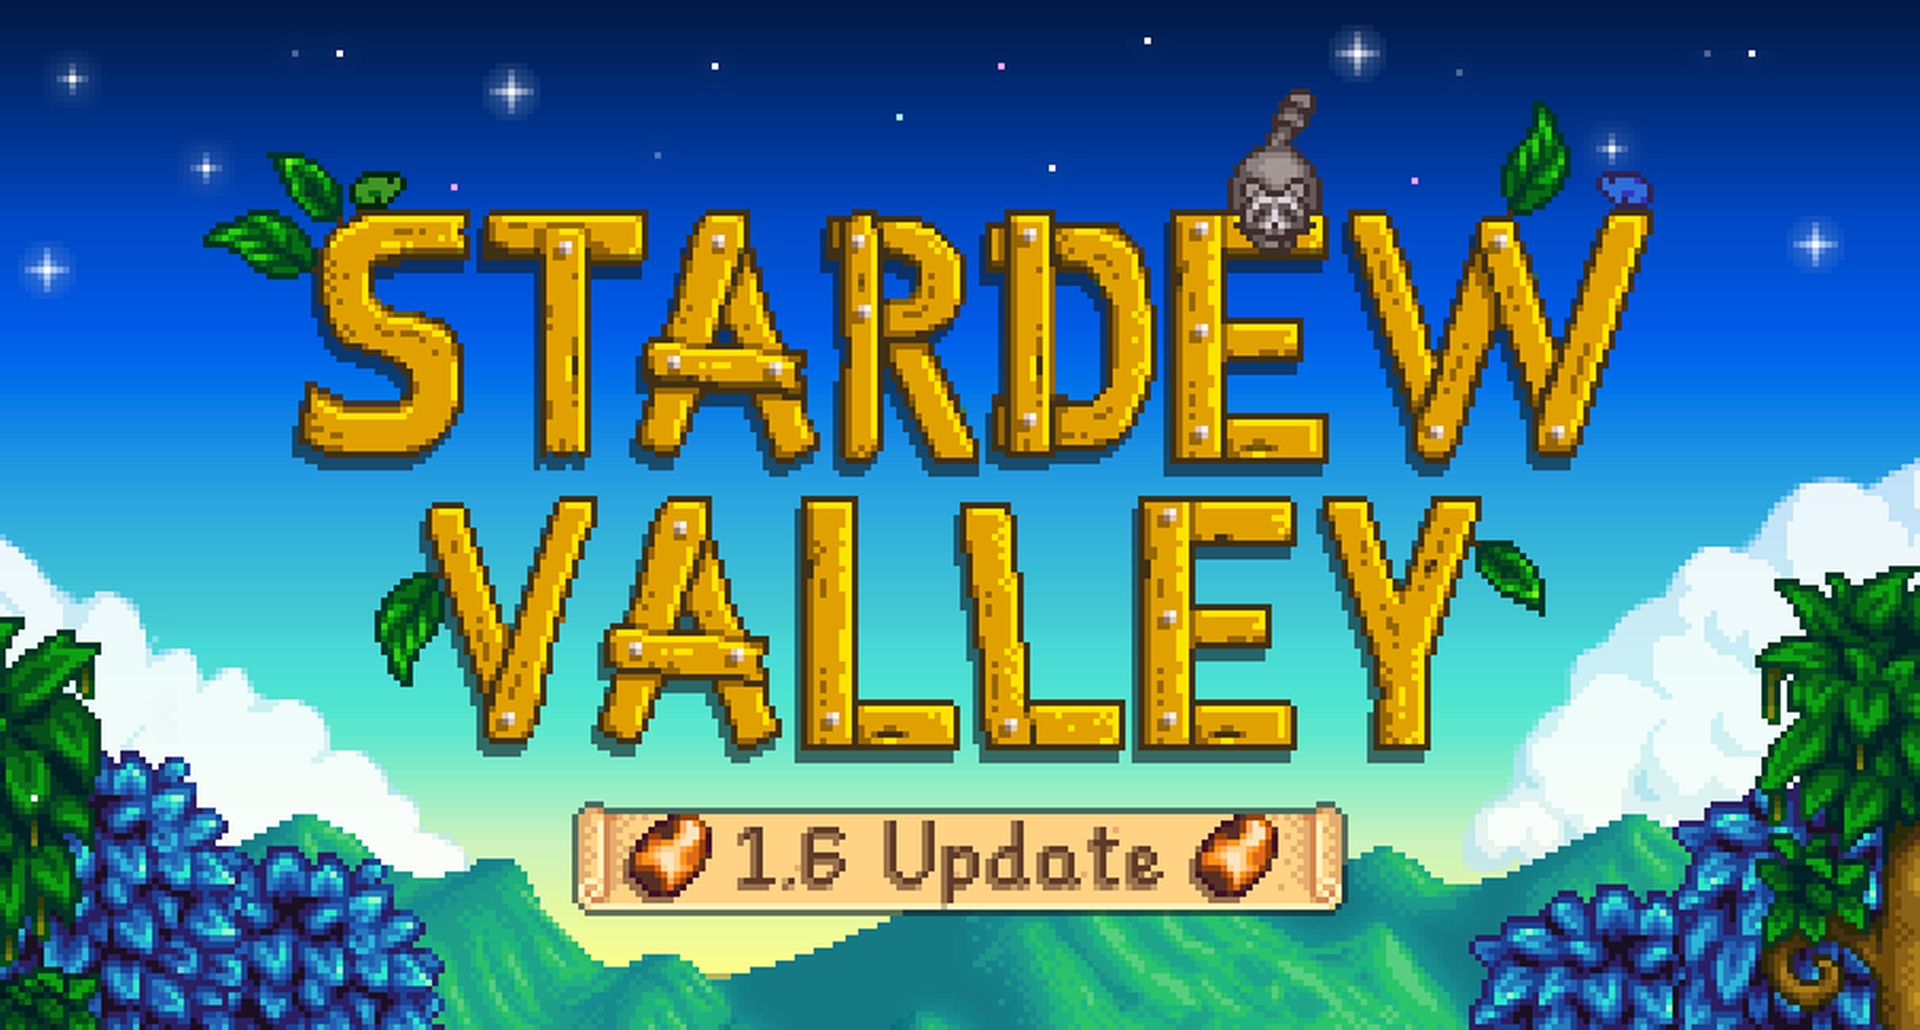 Stardew Valley-opdatering 1.6 udkommer den 16. marts til PC, meddeler udvikleren